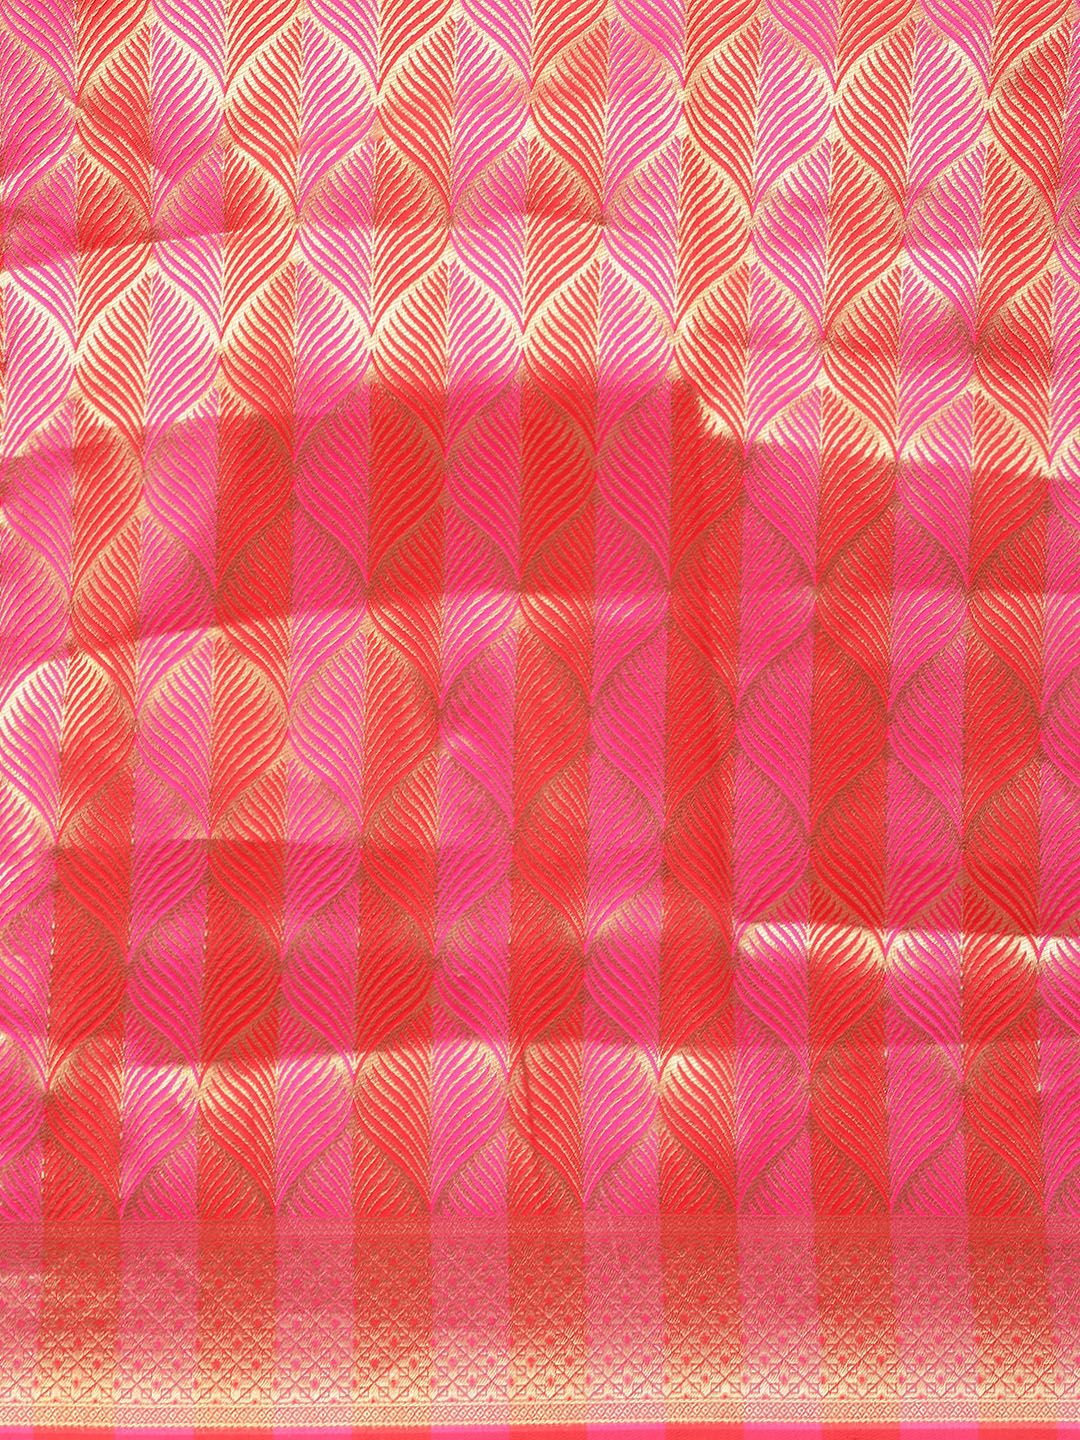 Pink Color Zibra Desigen Morden Look Banarasi Saree With Heavy Looks